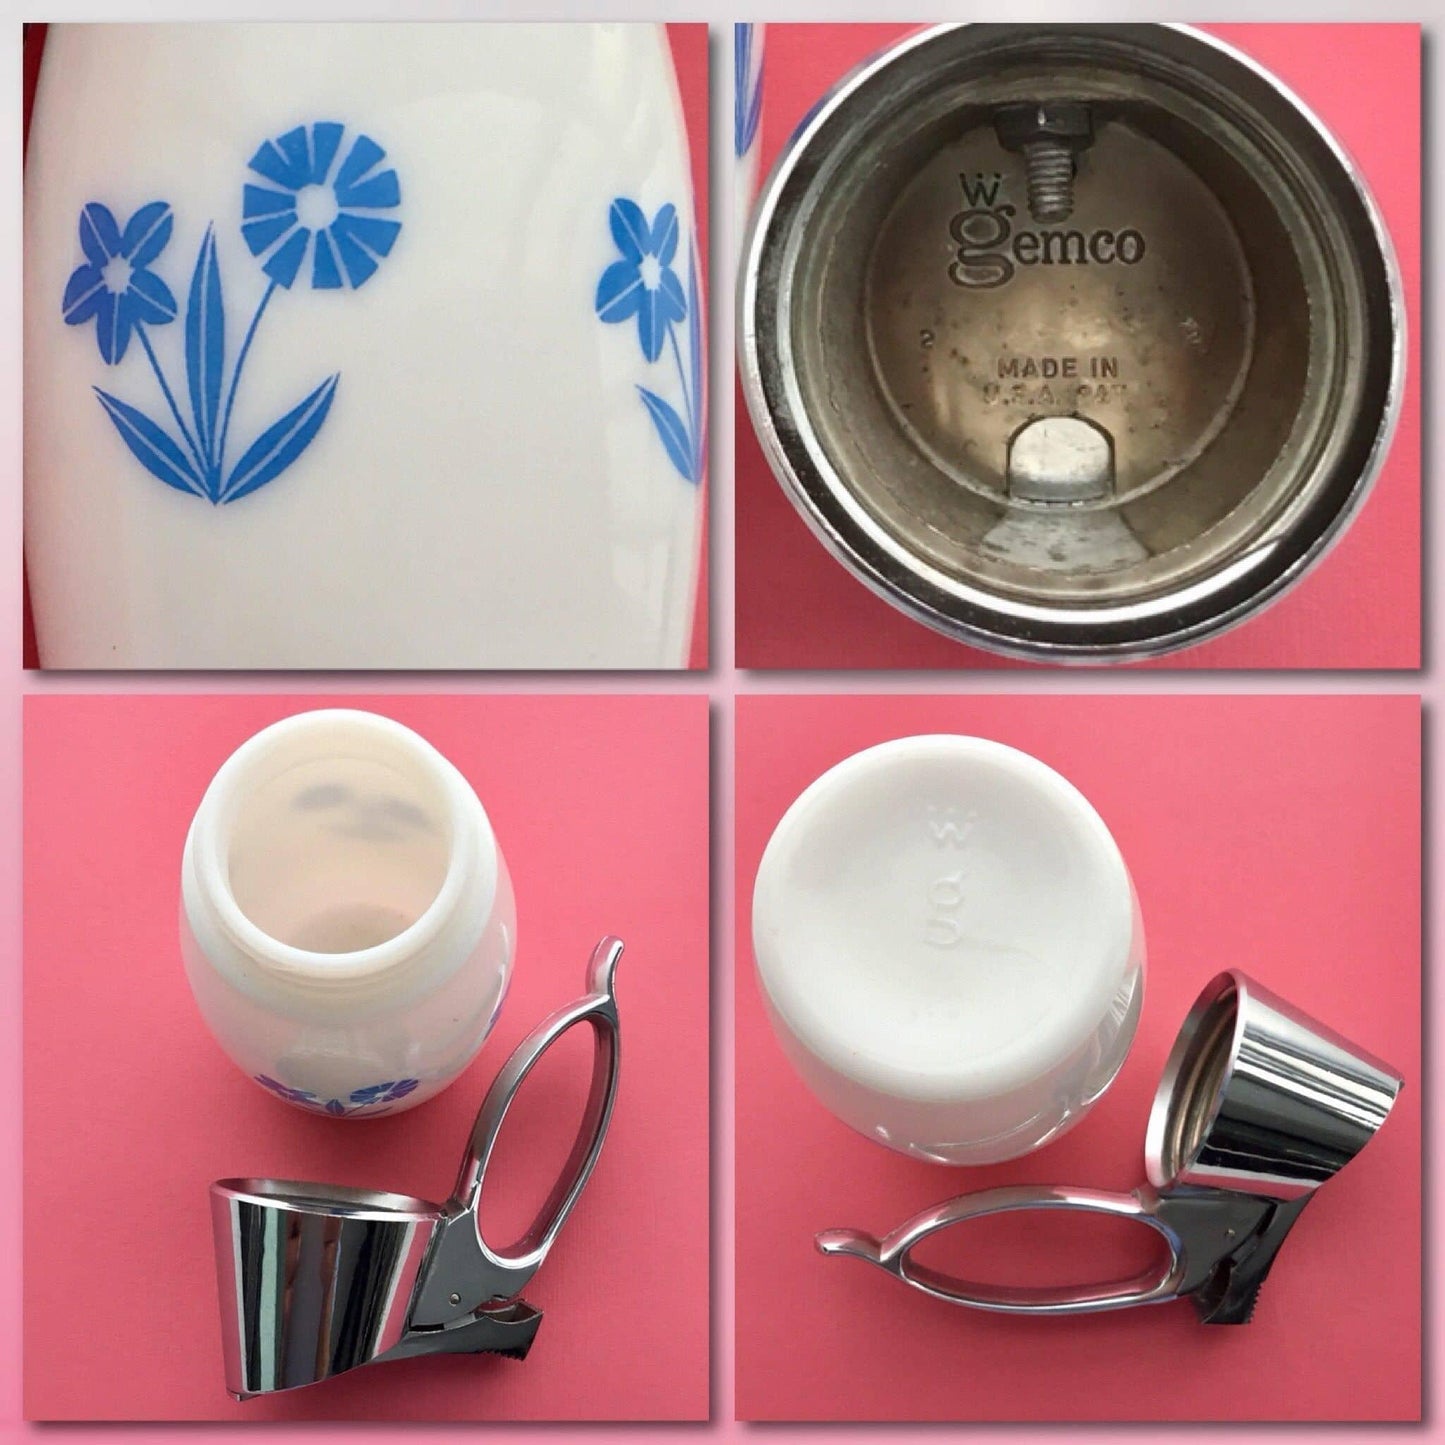 Gemco blue cornflower syrup dispenser chrome top, vintage kitchenware